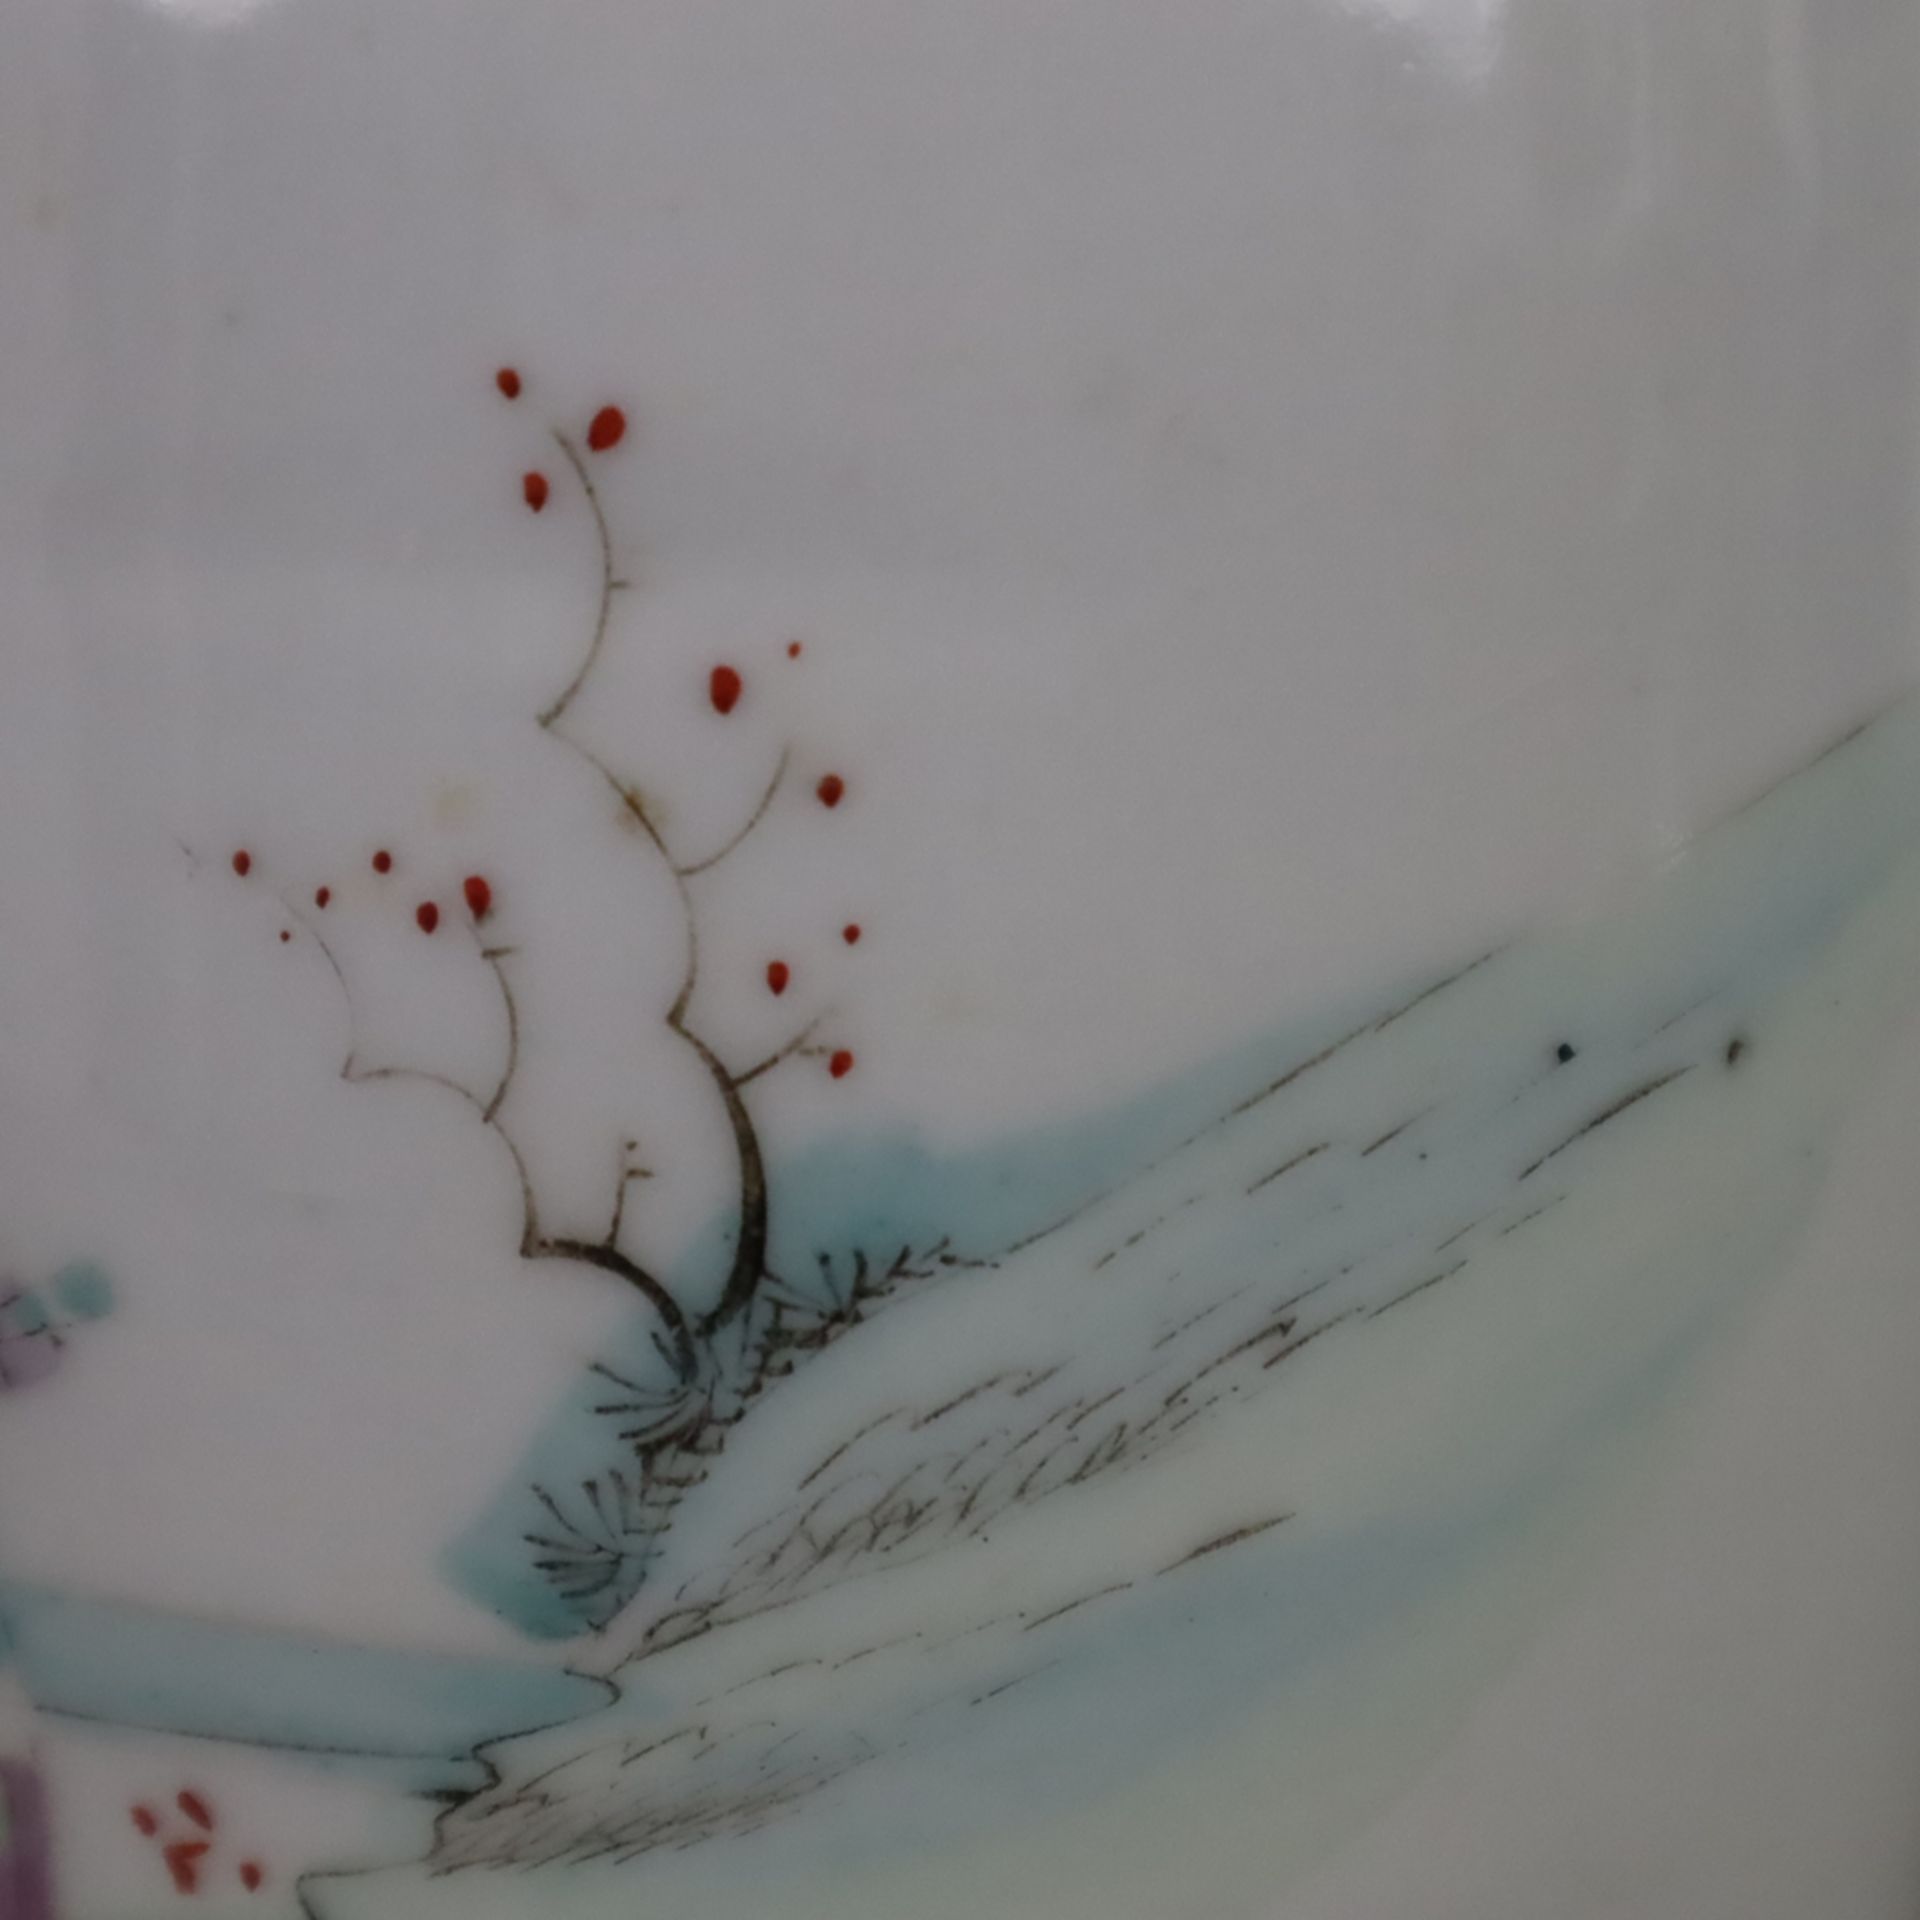 Balustervase - Porzellan, China, späte Qing-Dynastie, auf der leicht gebauchten Balusterwandung meh - Bild 10 aus 11